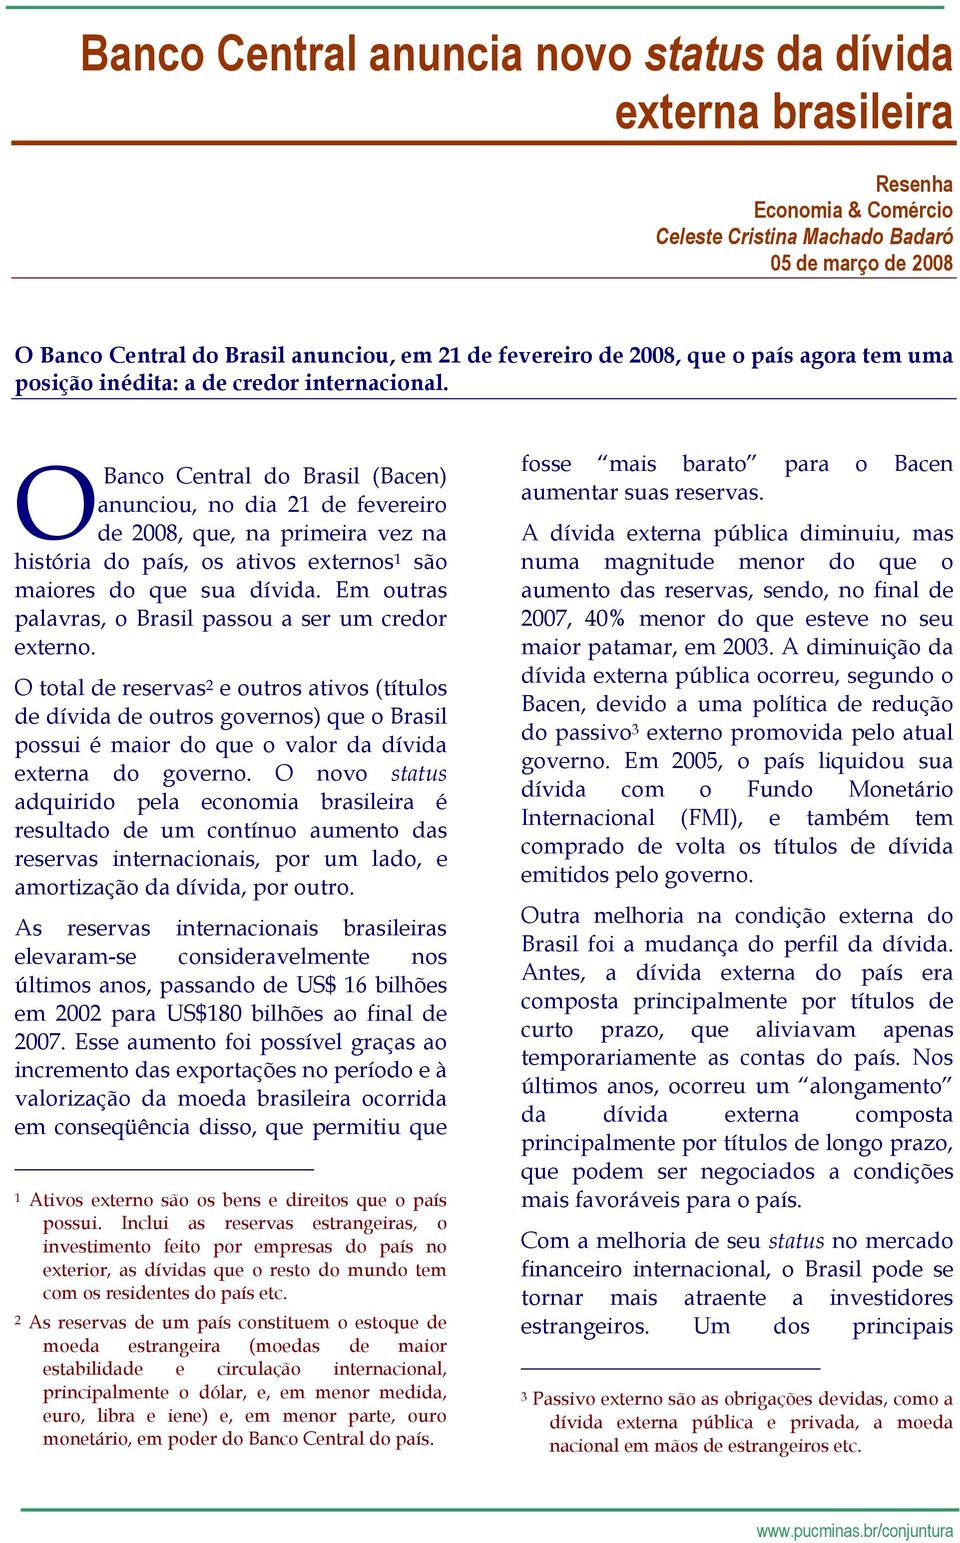 OBanco Central do Brasil (Bacen) anunciou, no dia 21 de fevereiro de 2008, que, na primeira vez na história do país, os ativos externos 1 são maiores do que sua dívida.